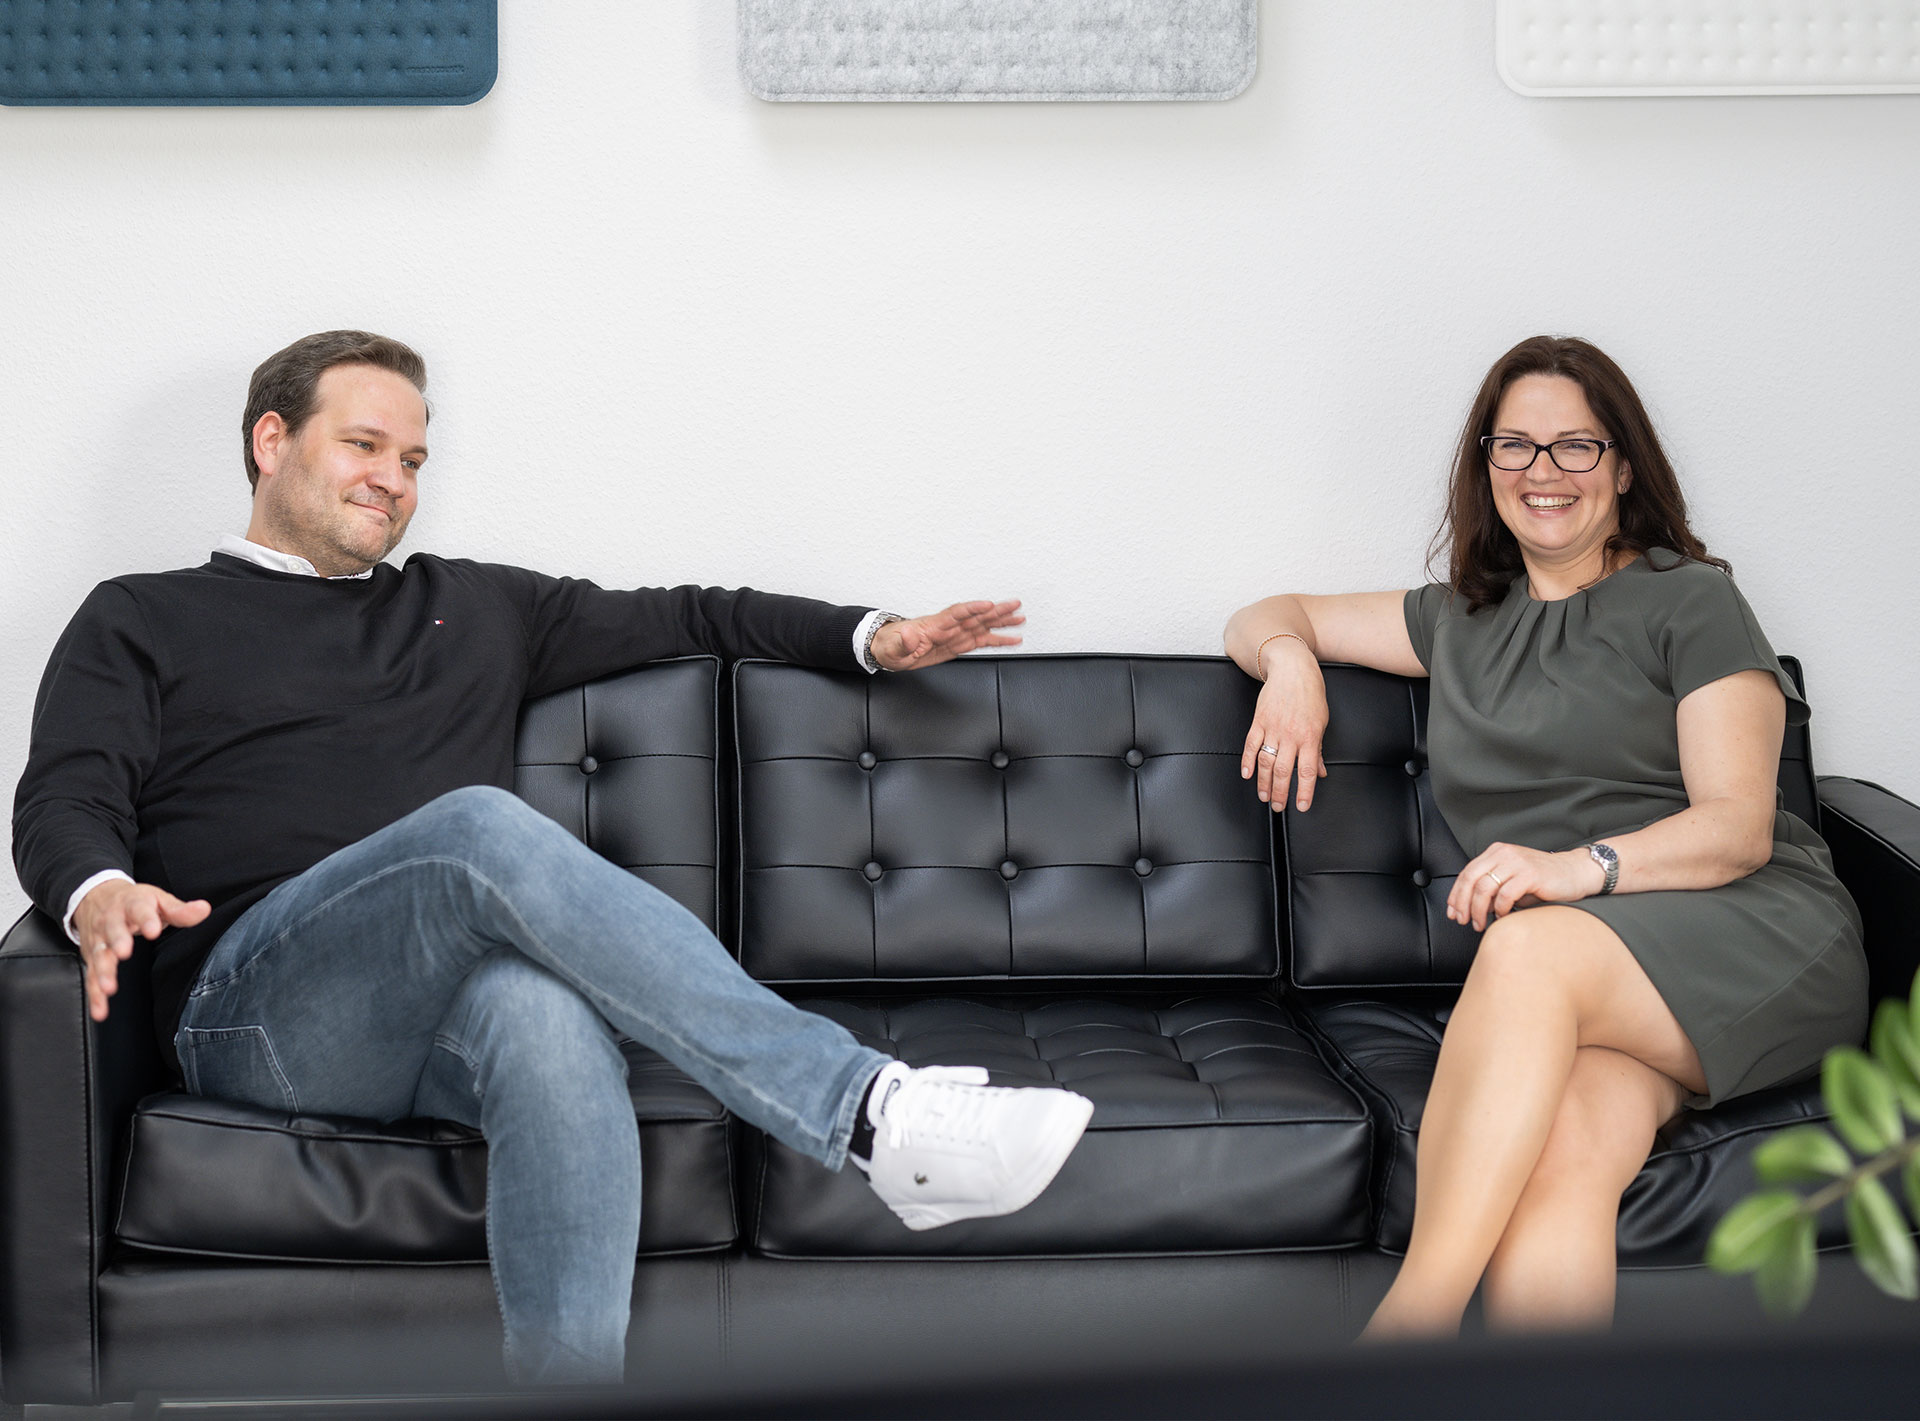 Ein Mann und eine Frau sitzen lächelnd auf einem schwarzen Ledersofa in einem modernen Büro.